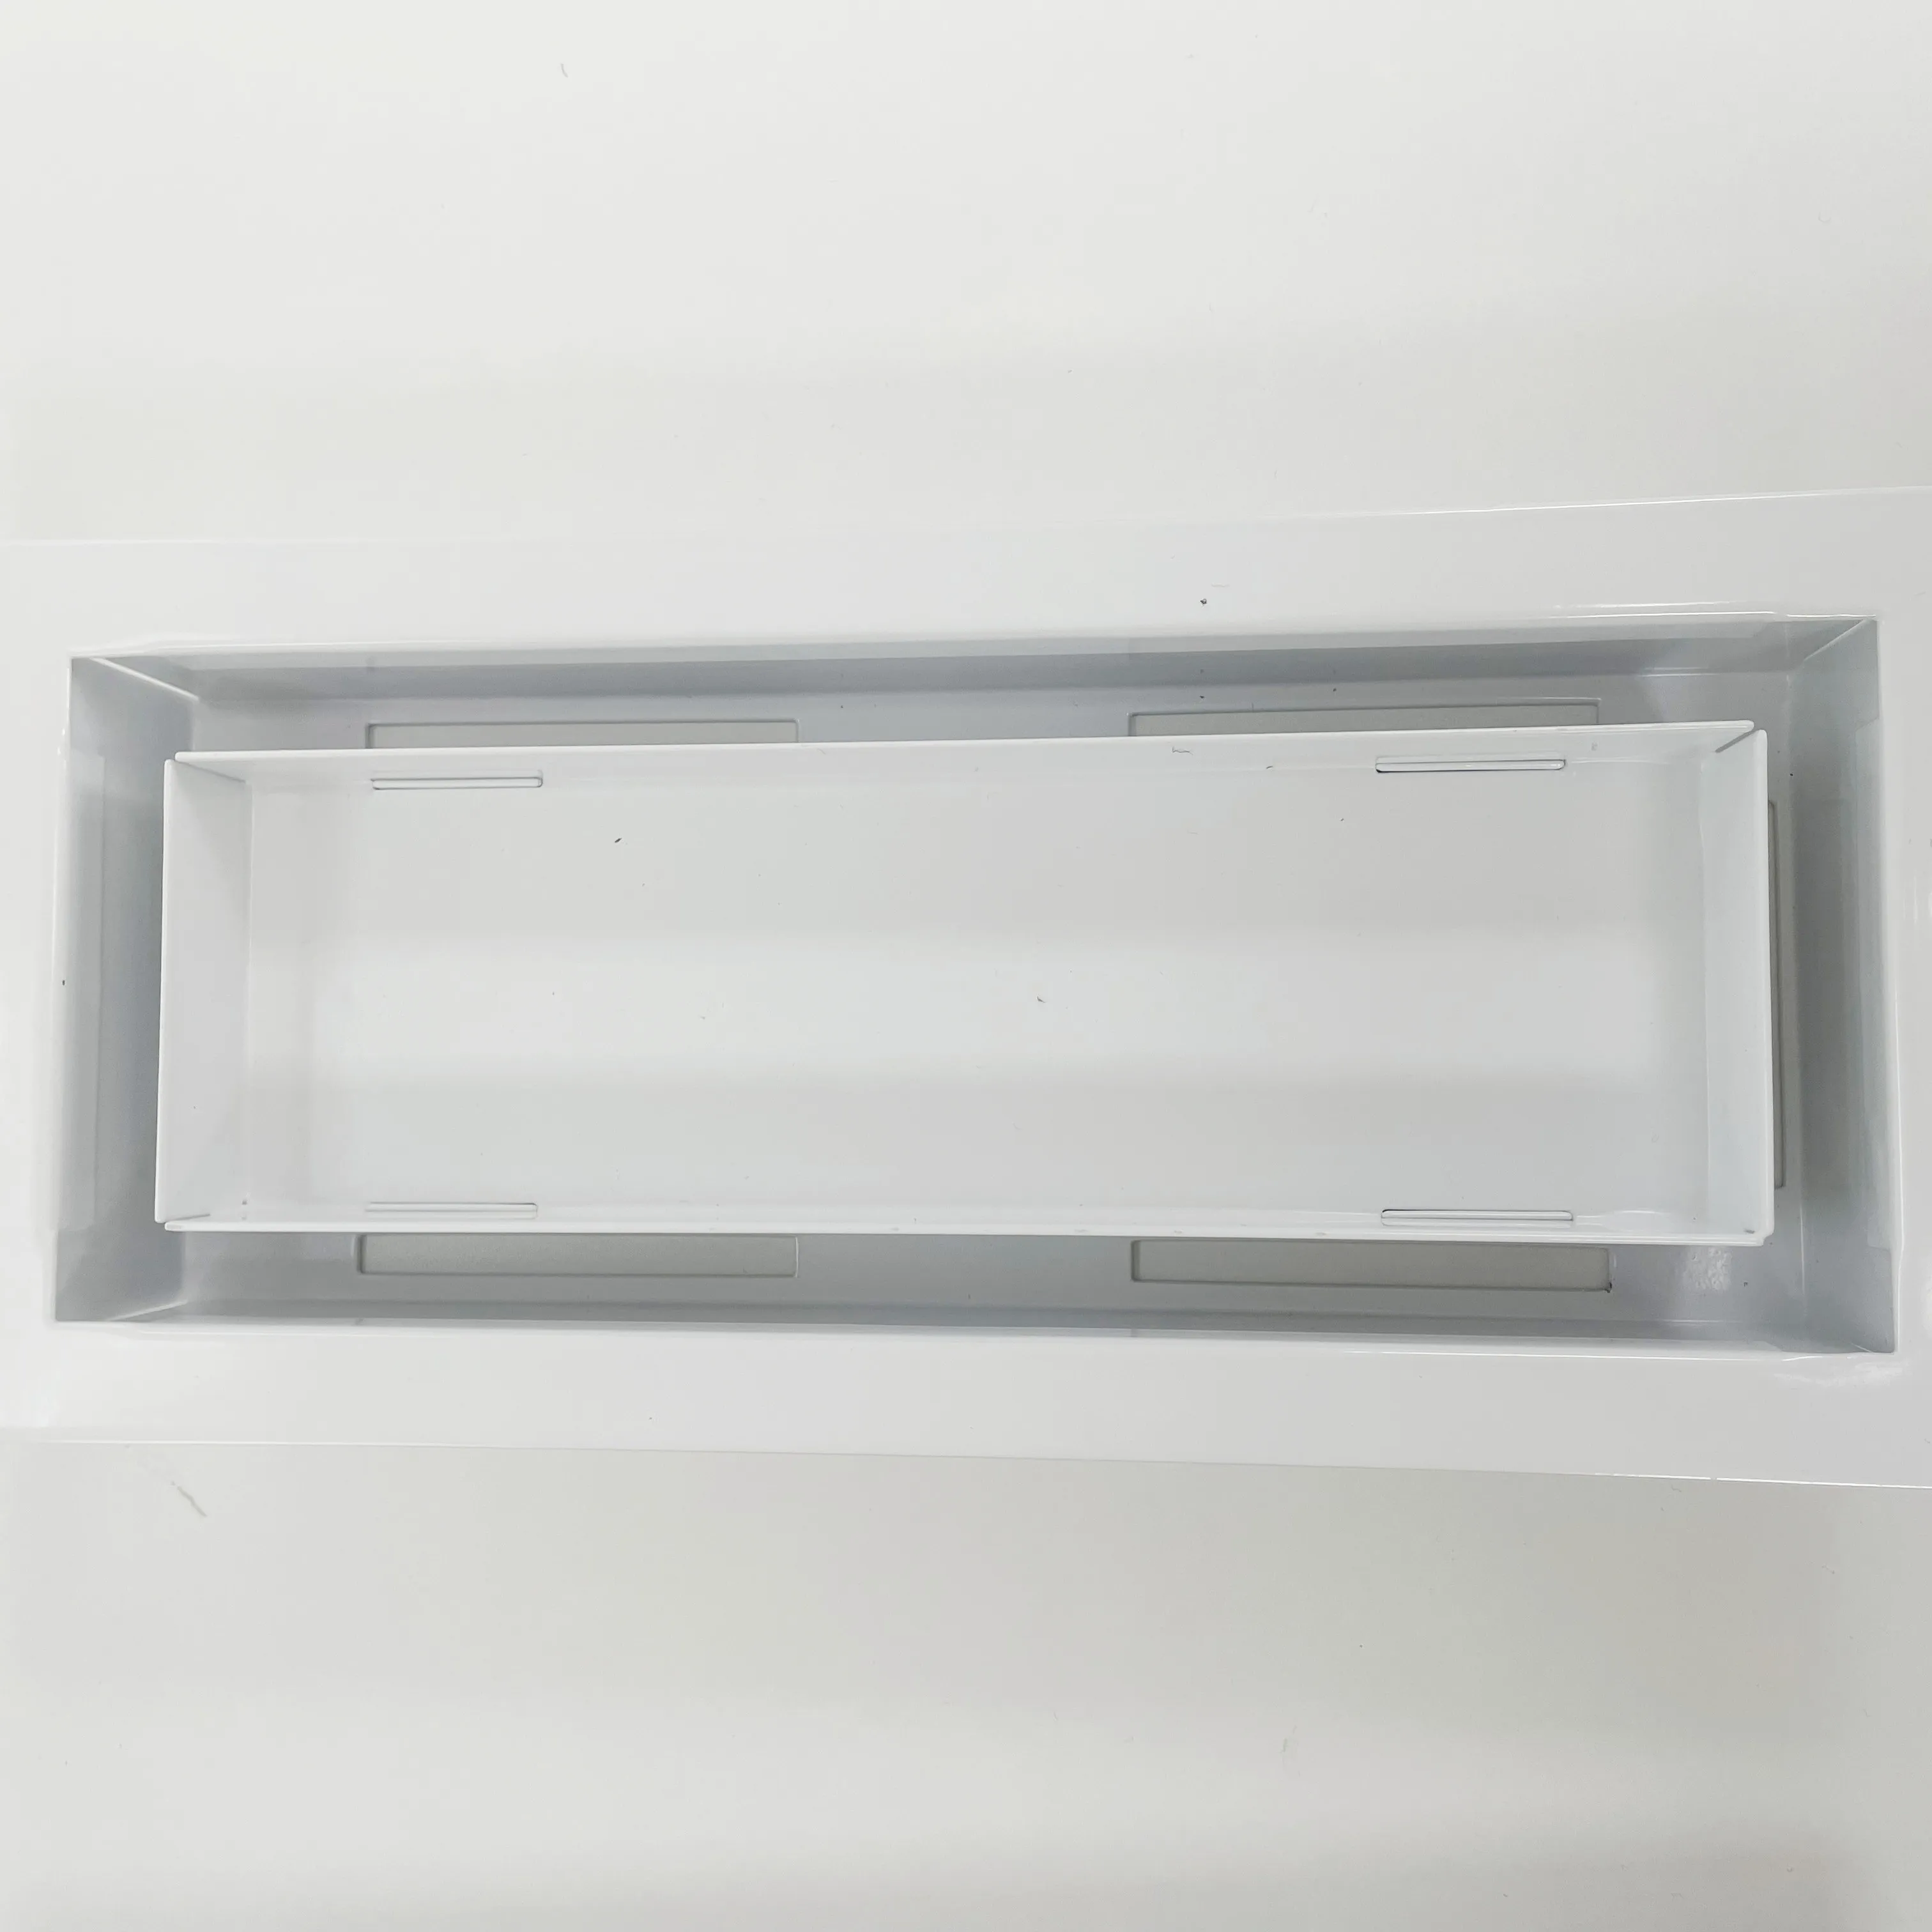 Piso aberturas sistema hvac preto removível 4x10 metal ventilação ar piso registro tampa do respiradouro